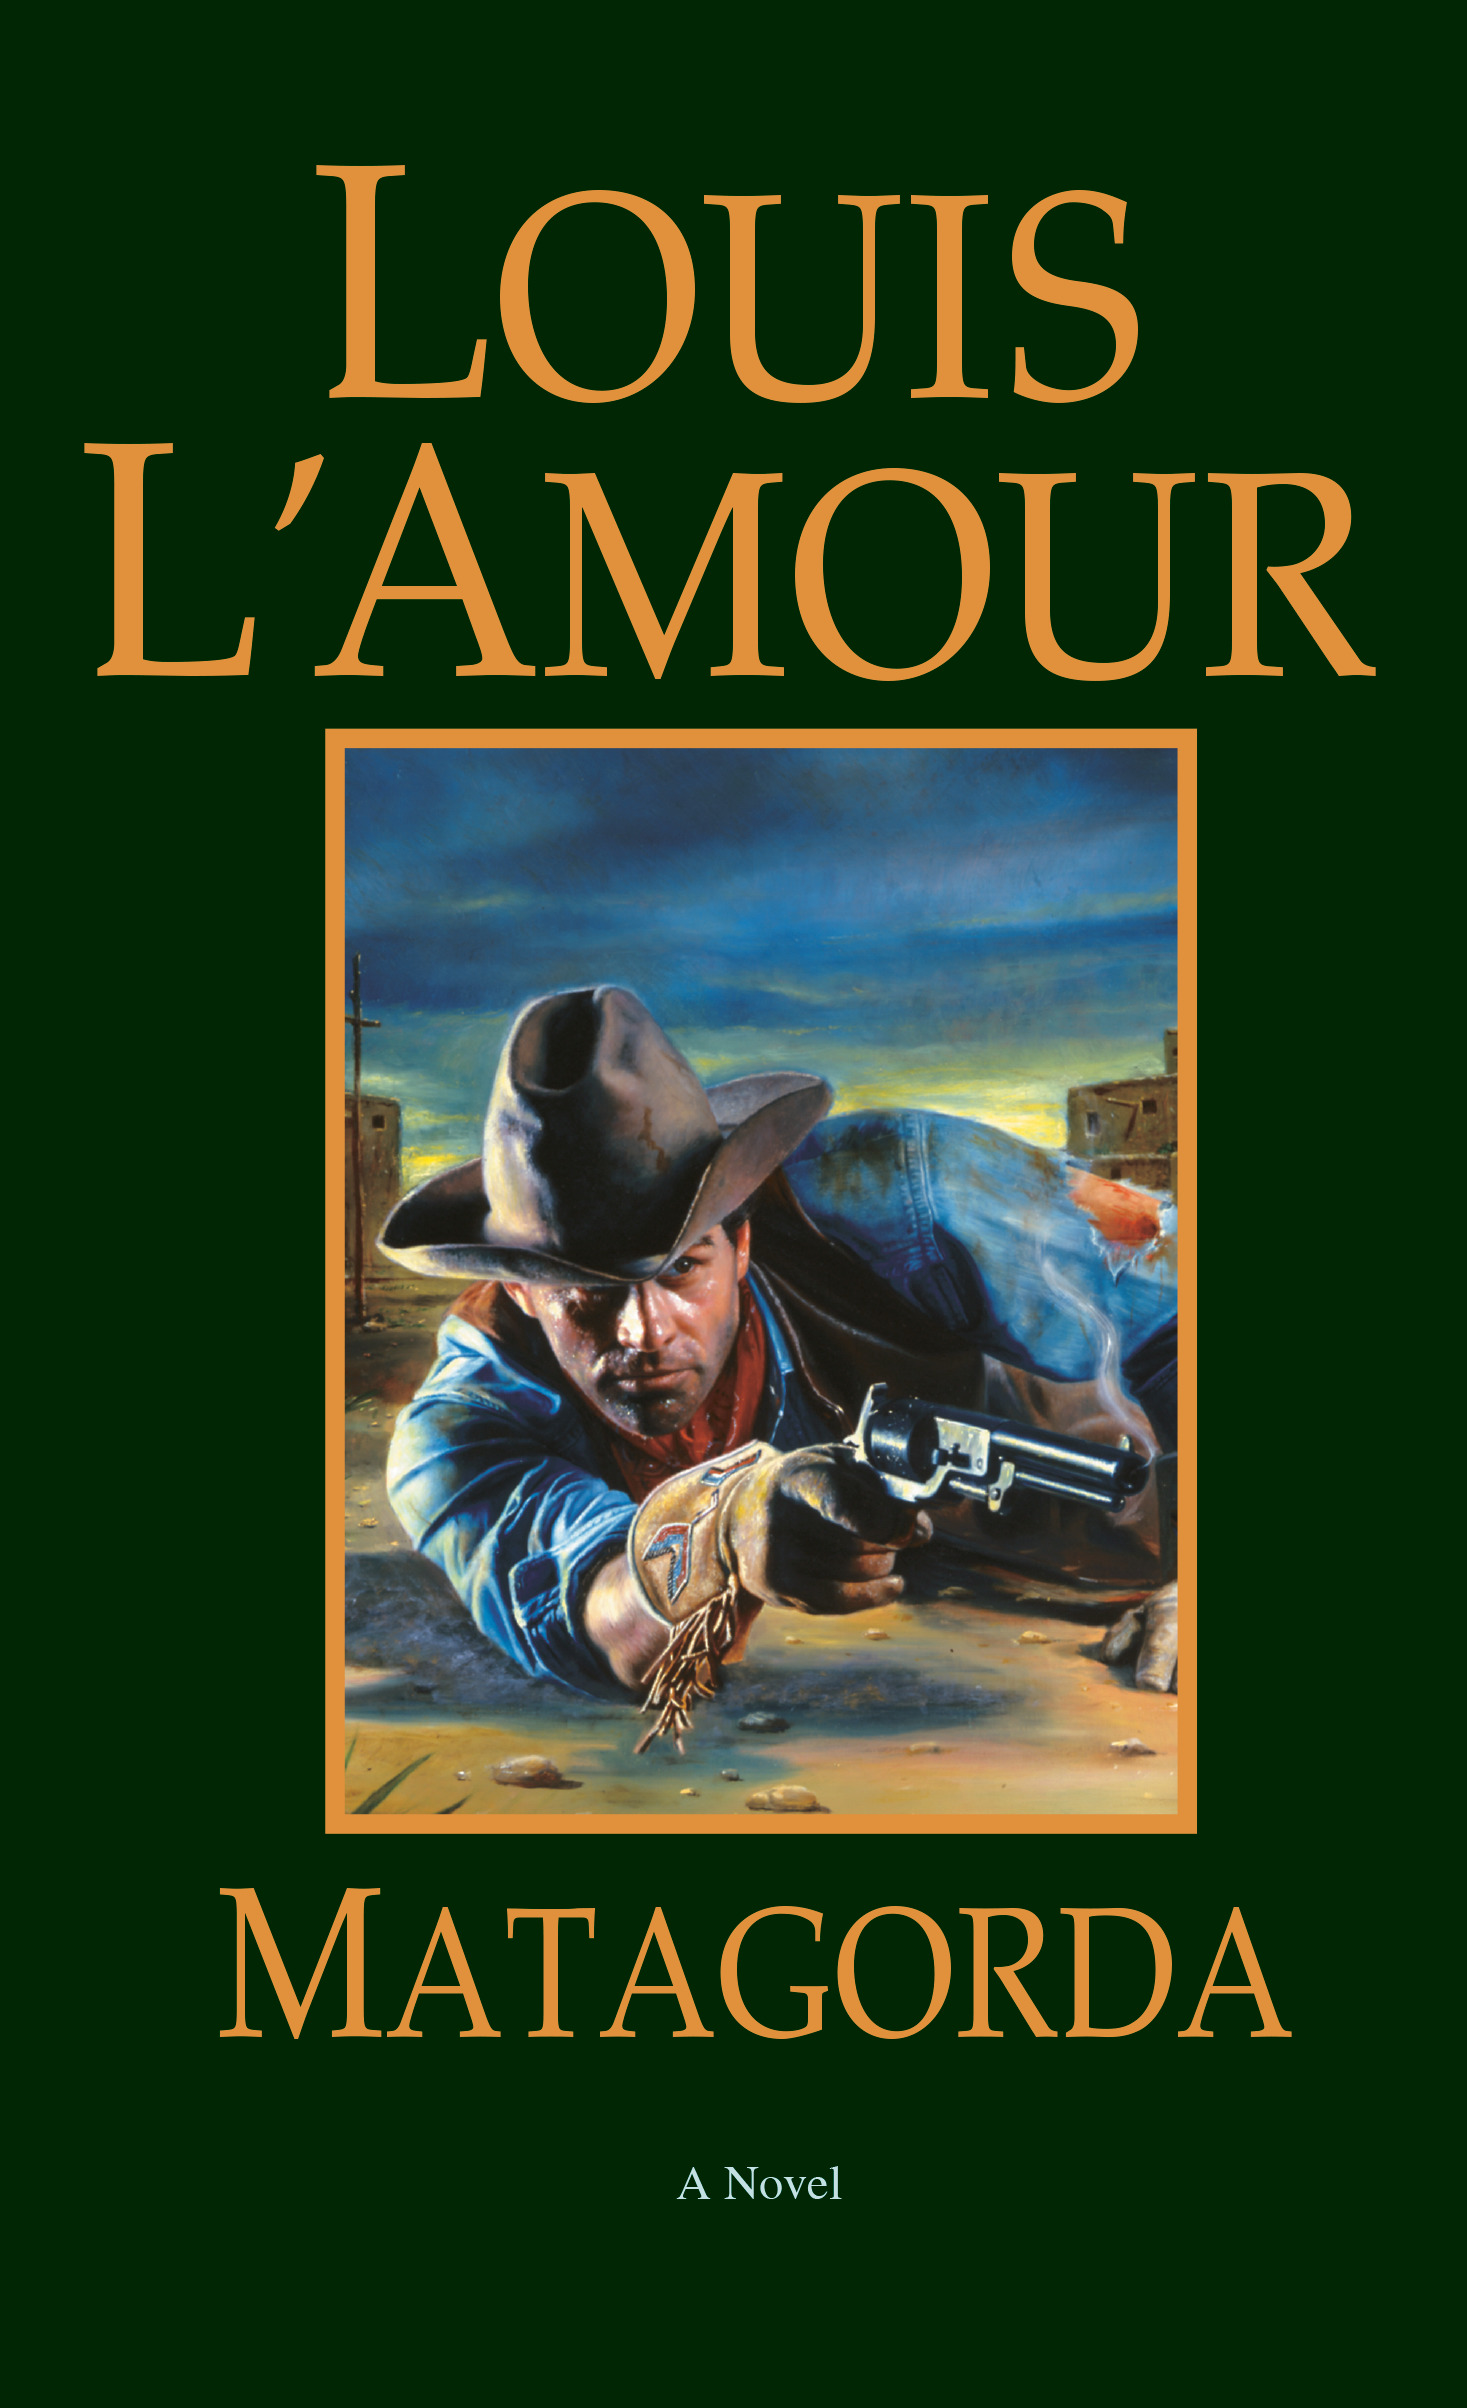 Matagorda Louis L'Amour Author